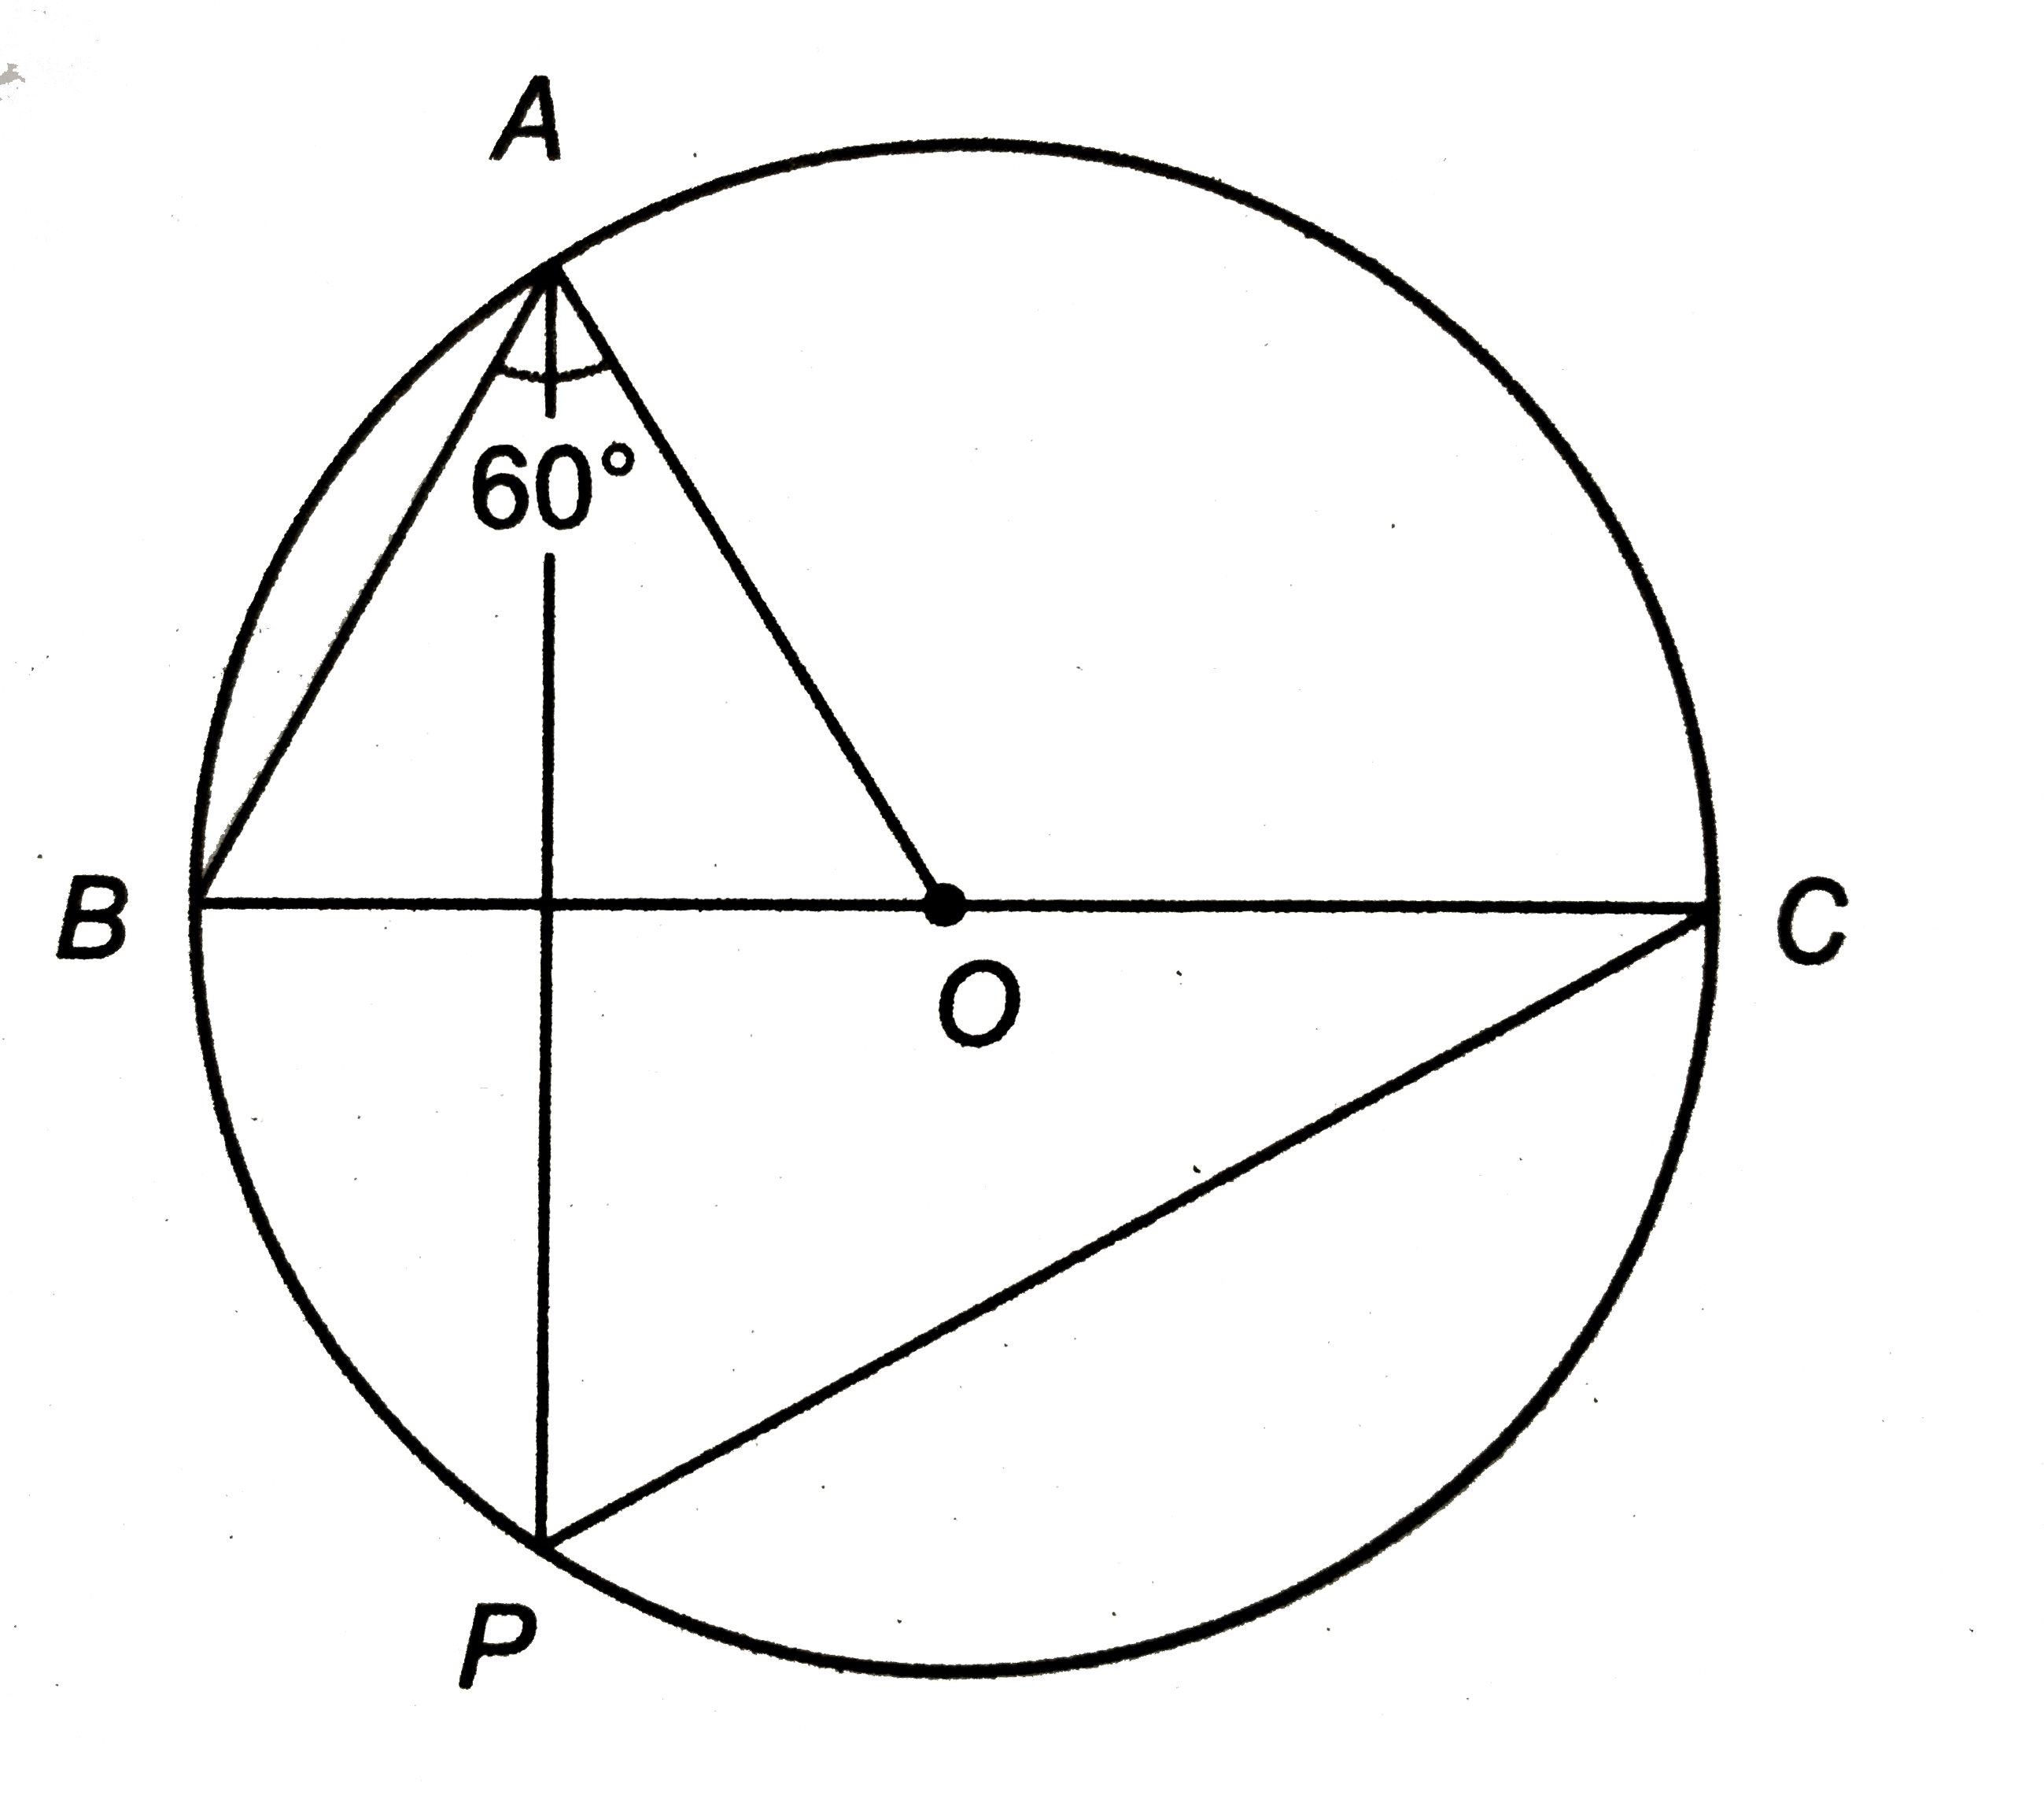 संलग्न चित्र में, 'O' वृत्त का केन्द्र है और angleOAB=60^(@)  है | angleAPC ज्ञात कीजिए |